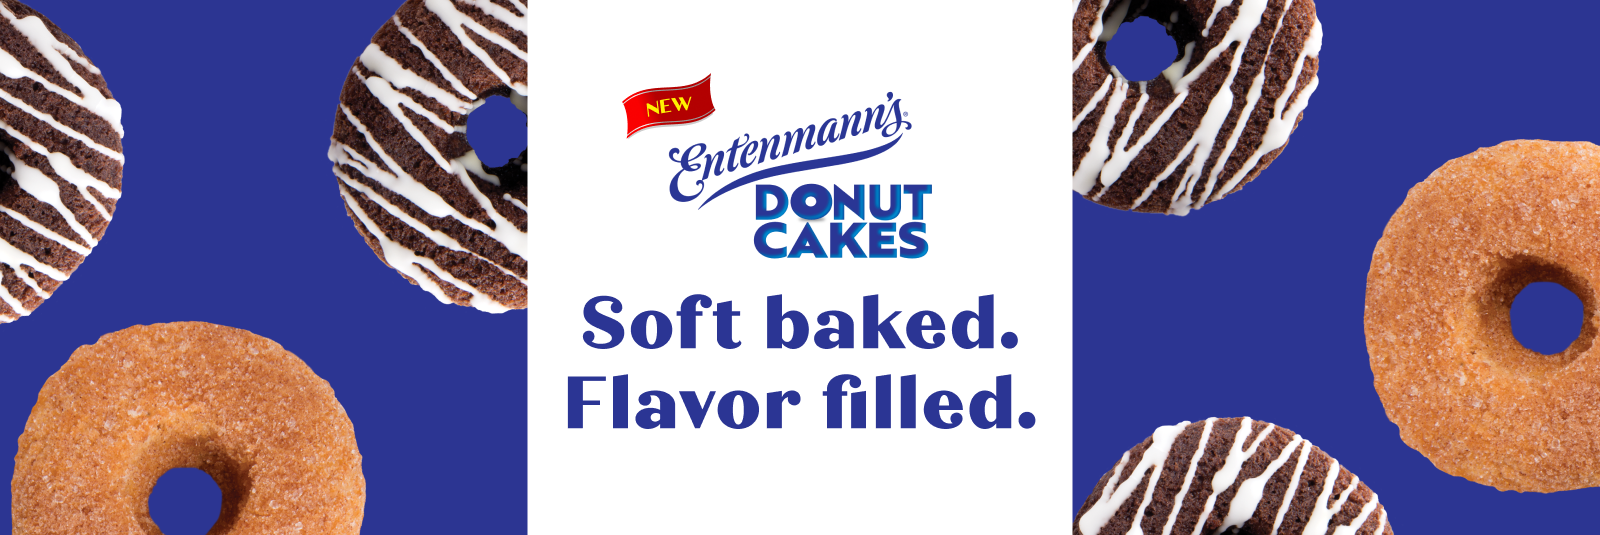 Entenmann's Donut cake soft baked flavor filled